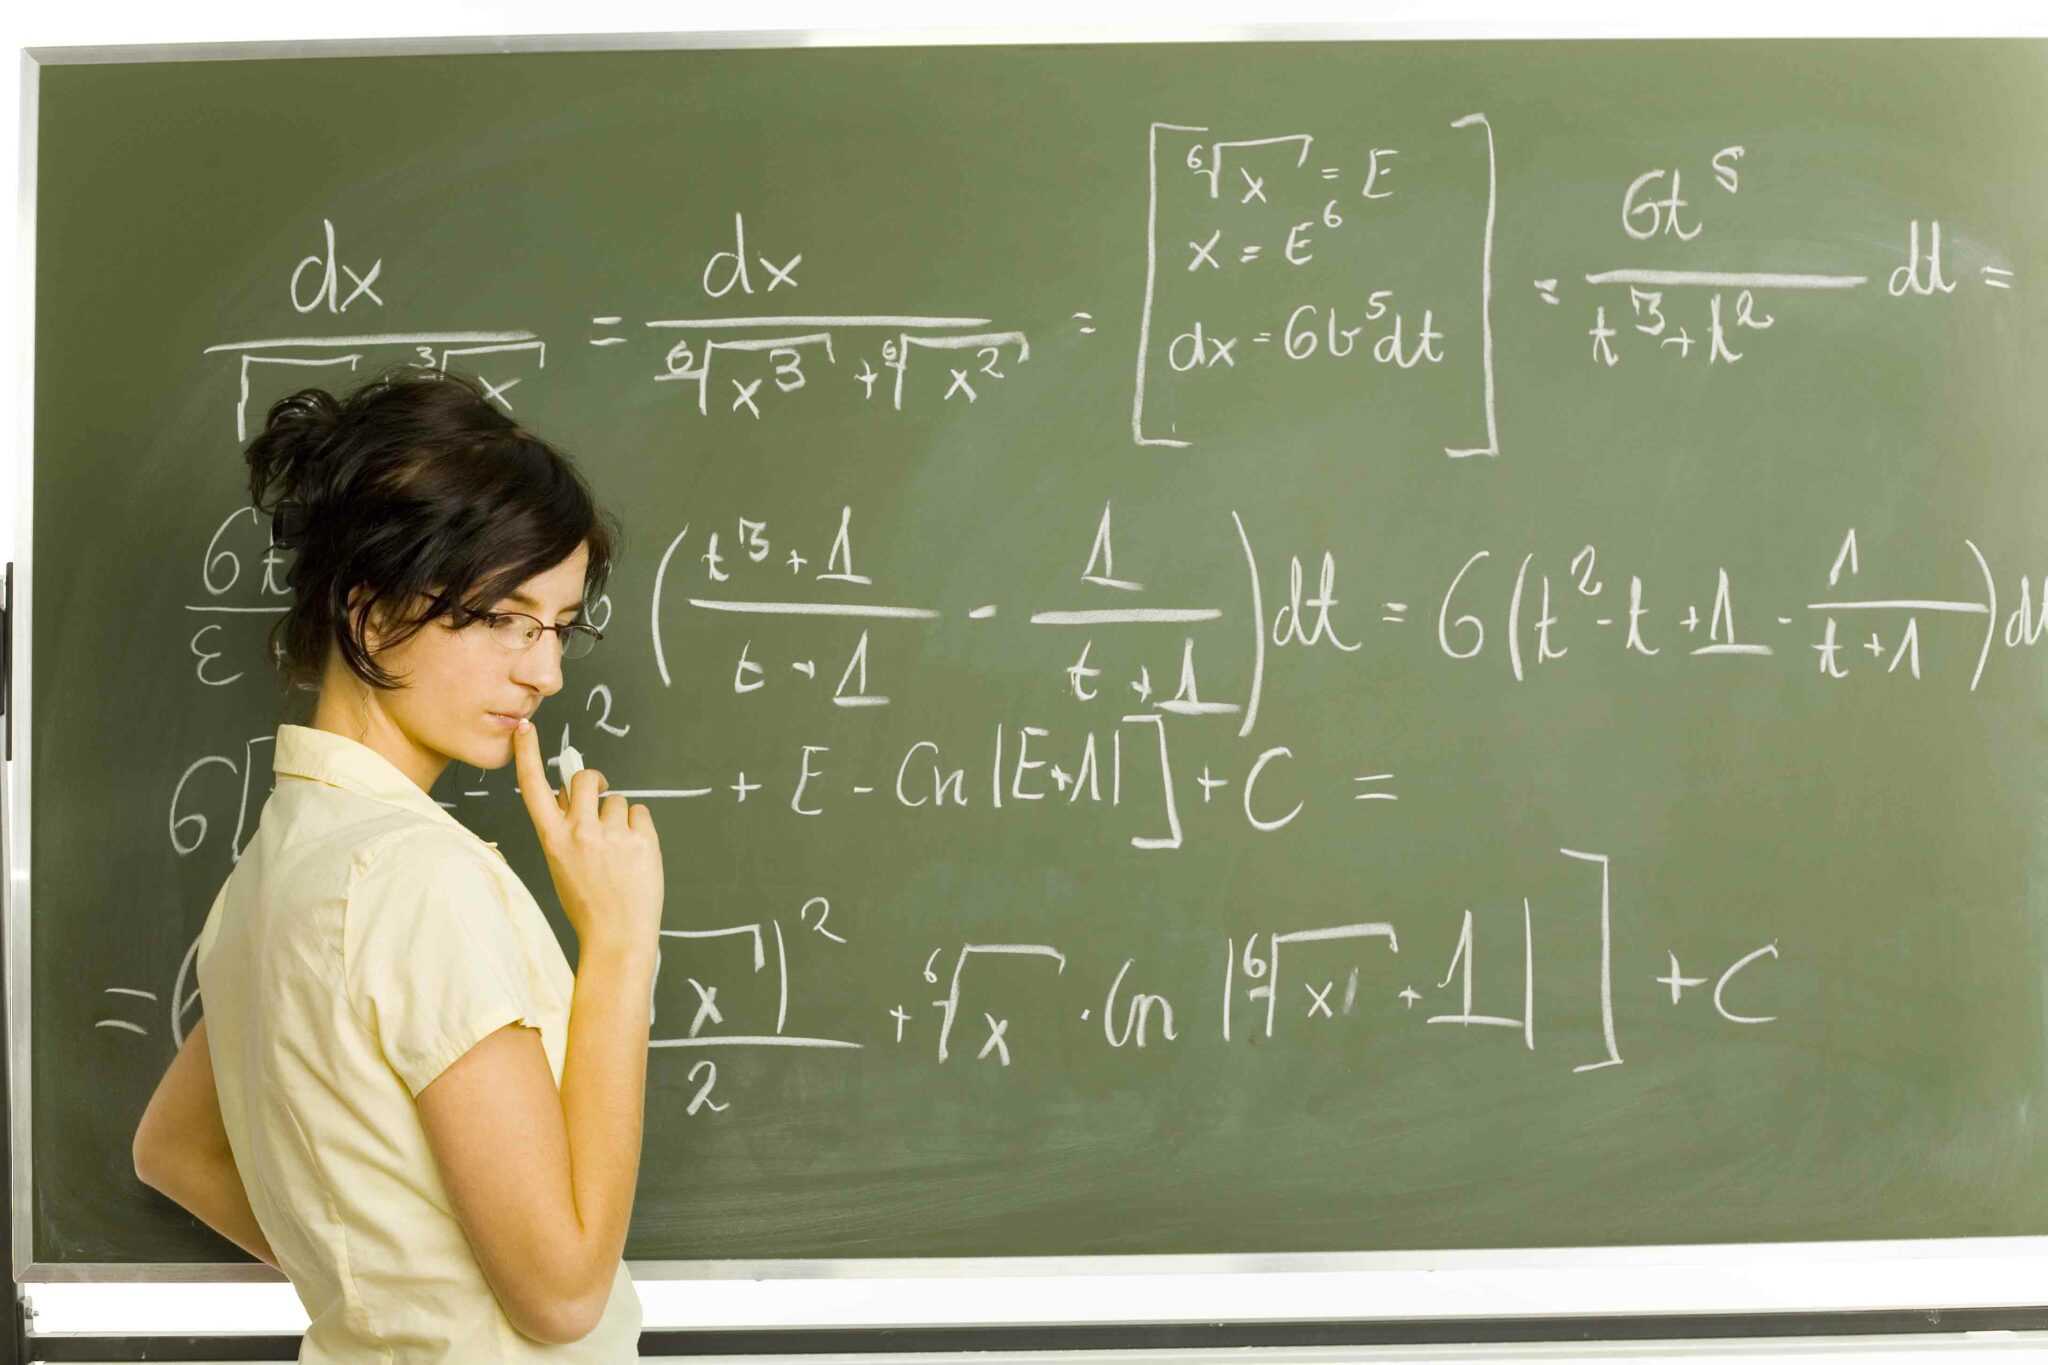 Тысяча урок математики. Заработная плата учителя в 2021 году. Высшая математика на доске. Картинки для математики. Зарплата учителя.